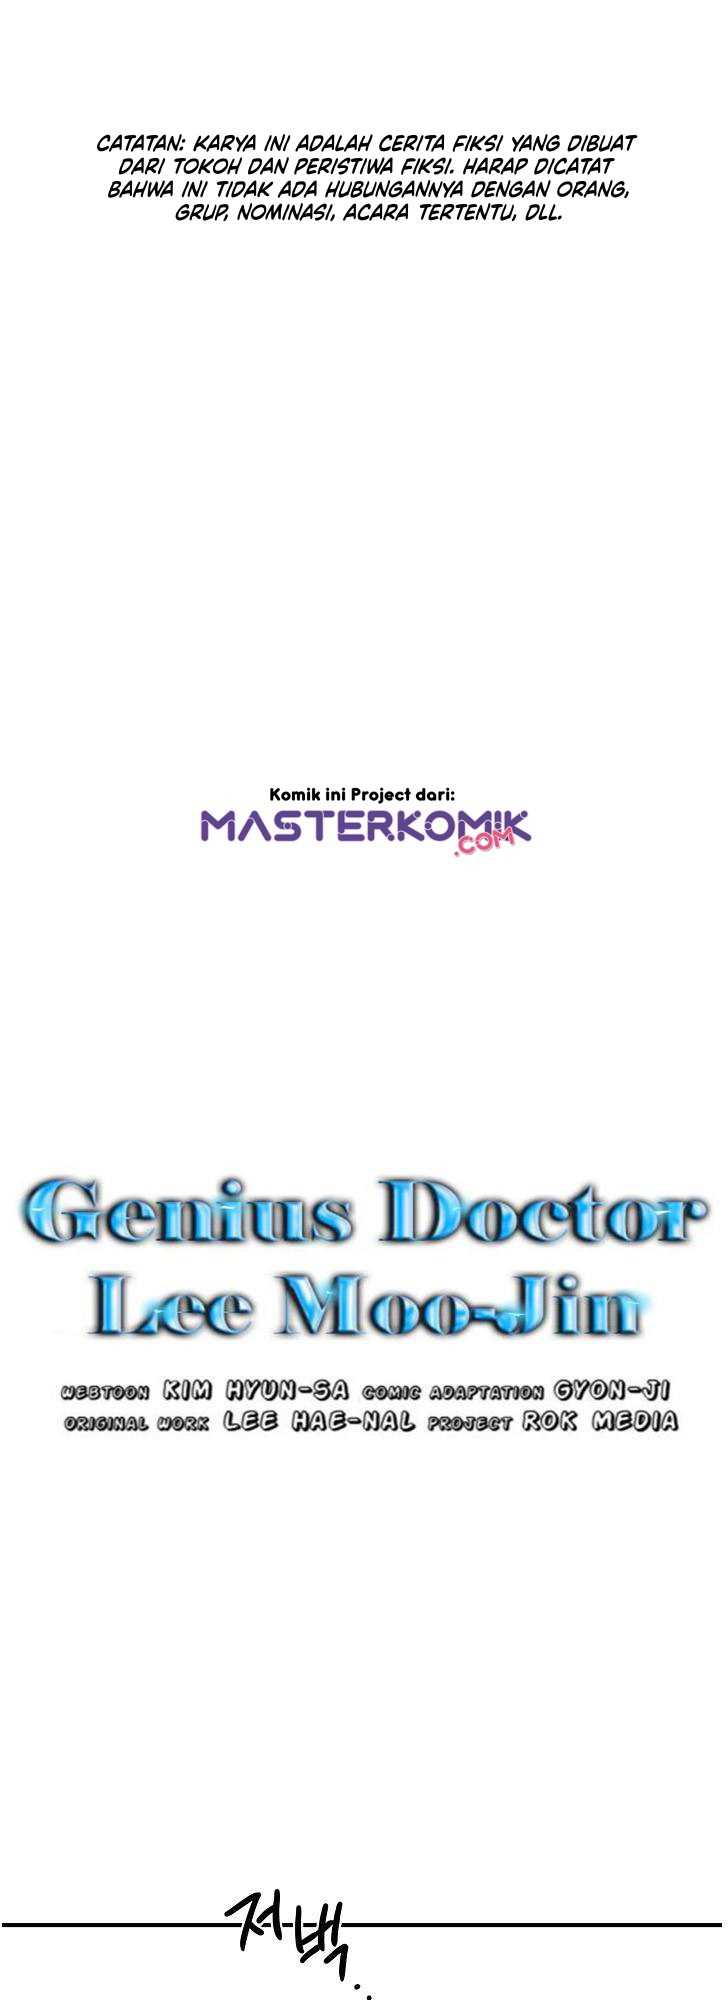 Genius Doctor Lee Moo-jin Chapter 10